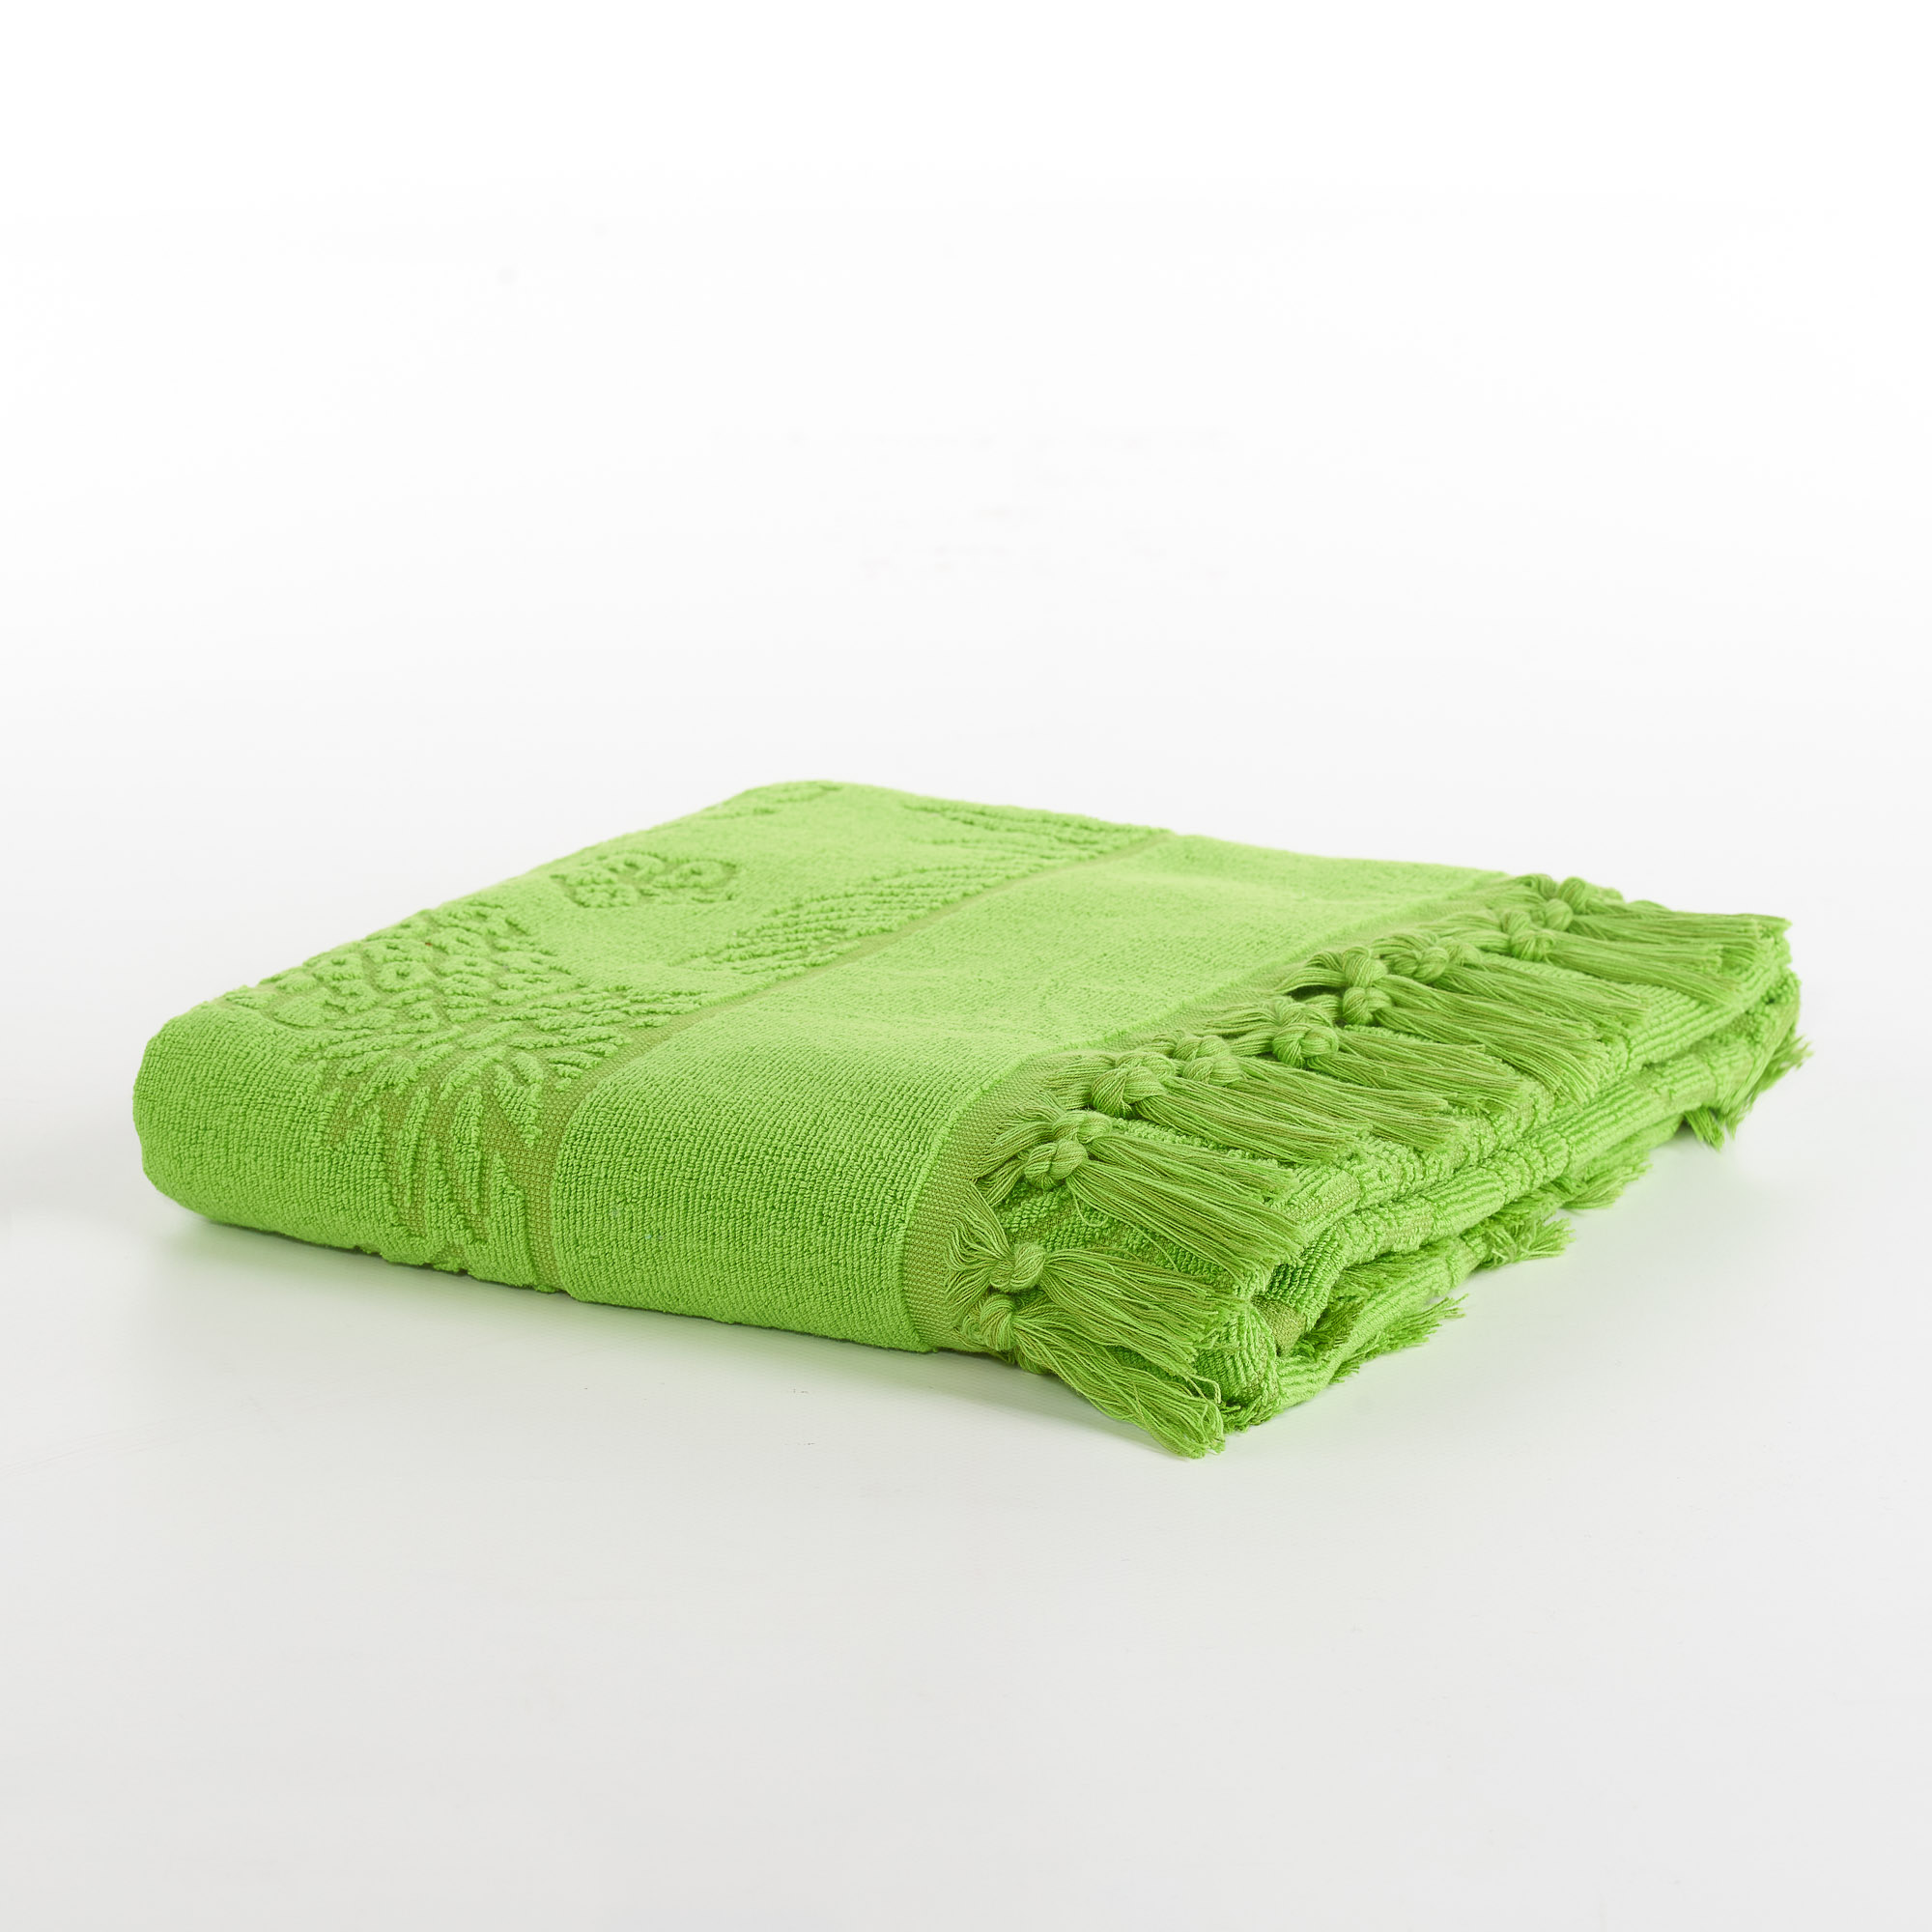 Pineapple microsponge beach towel verde Maè